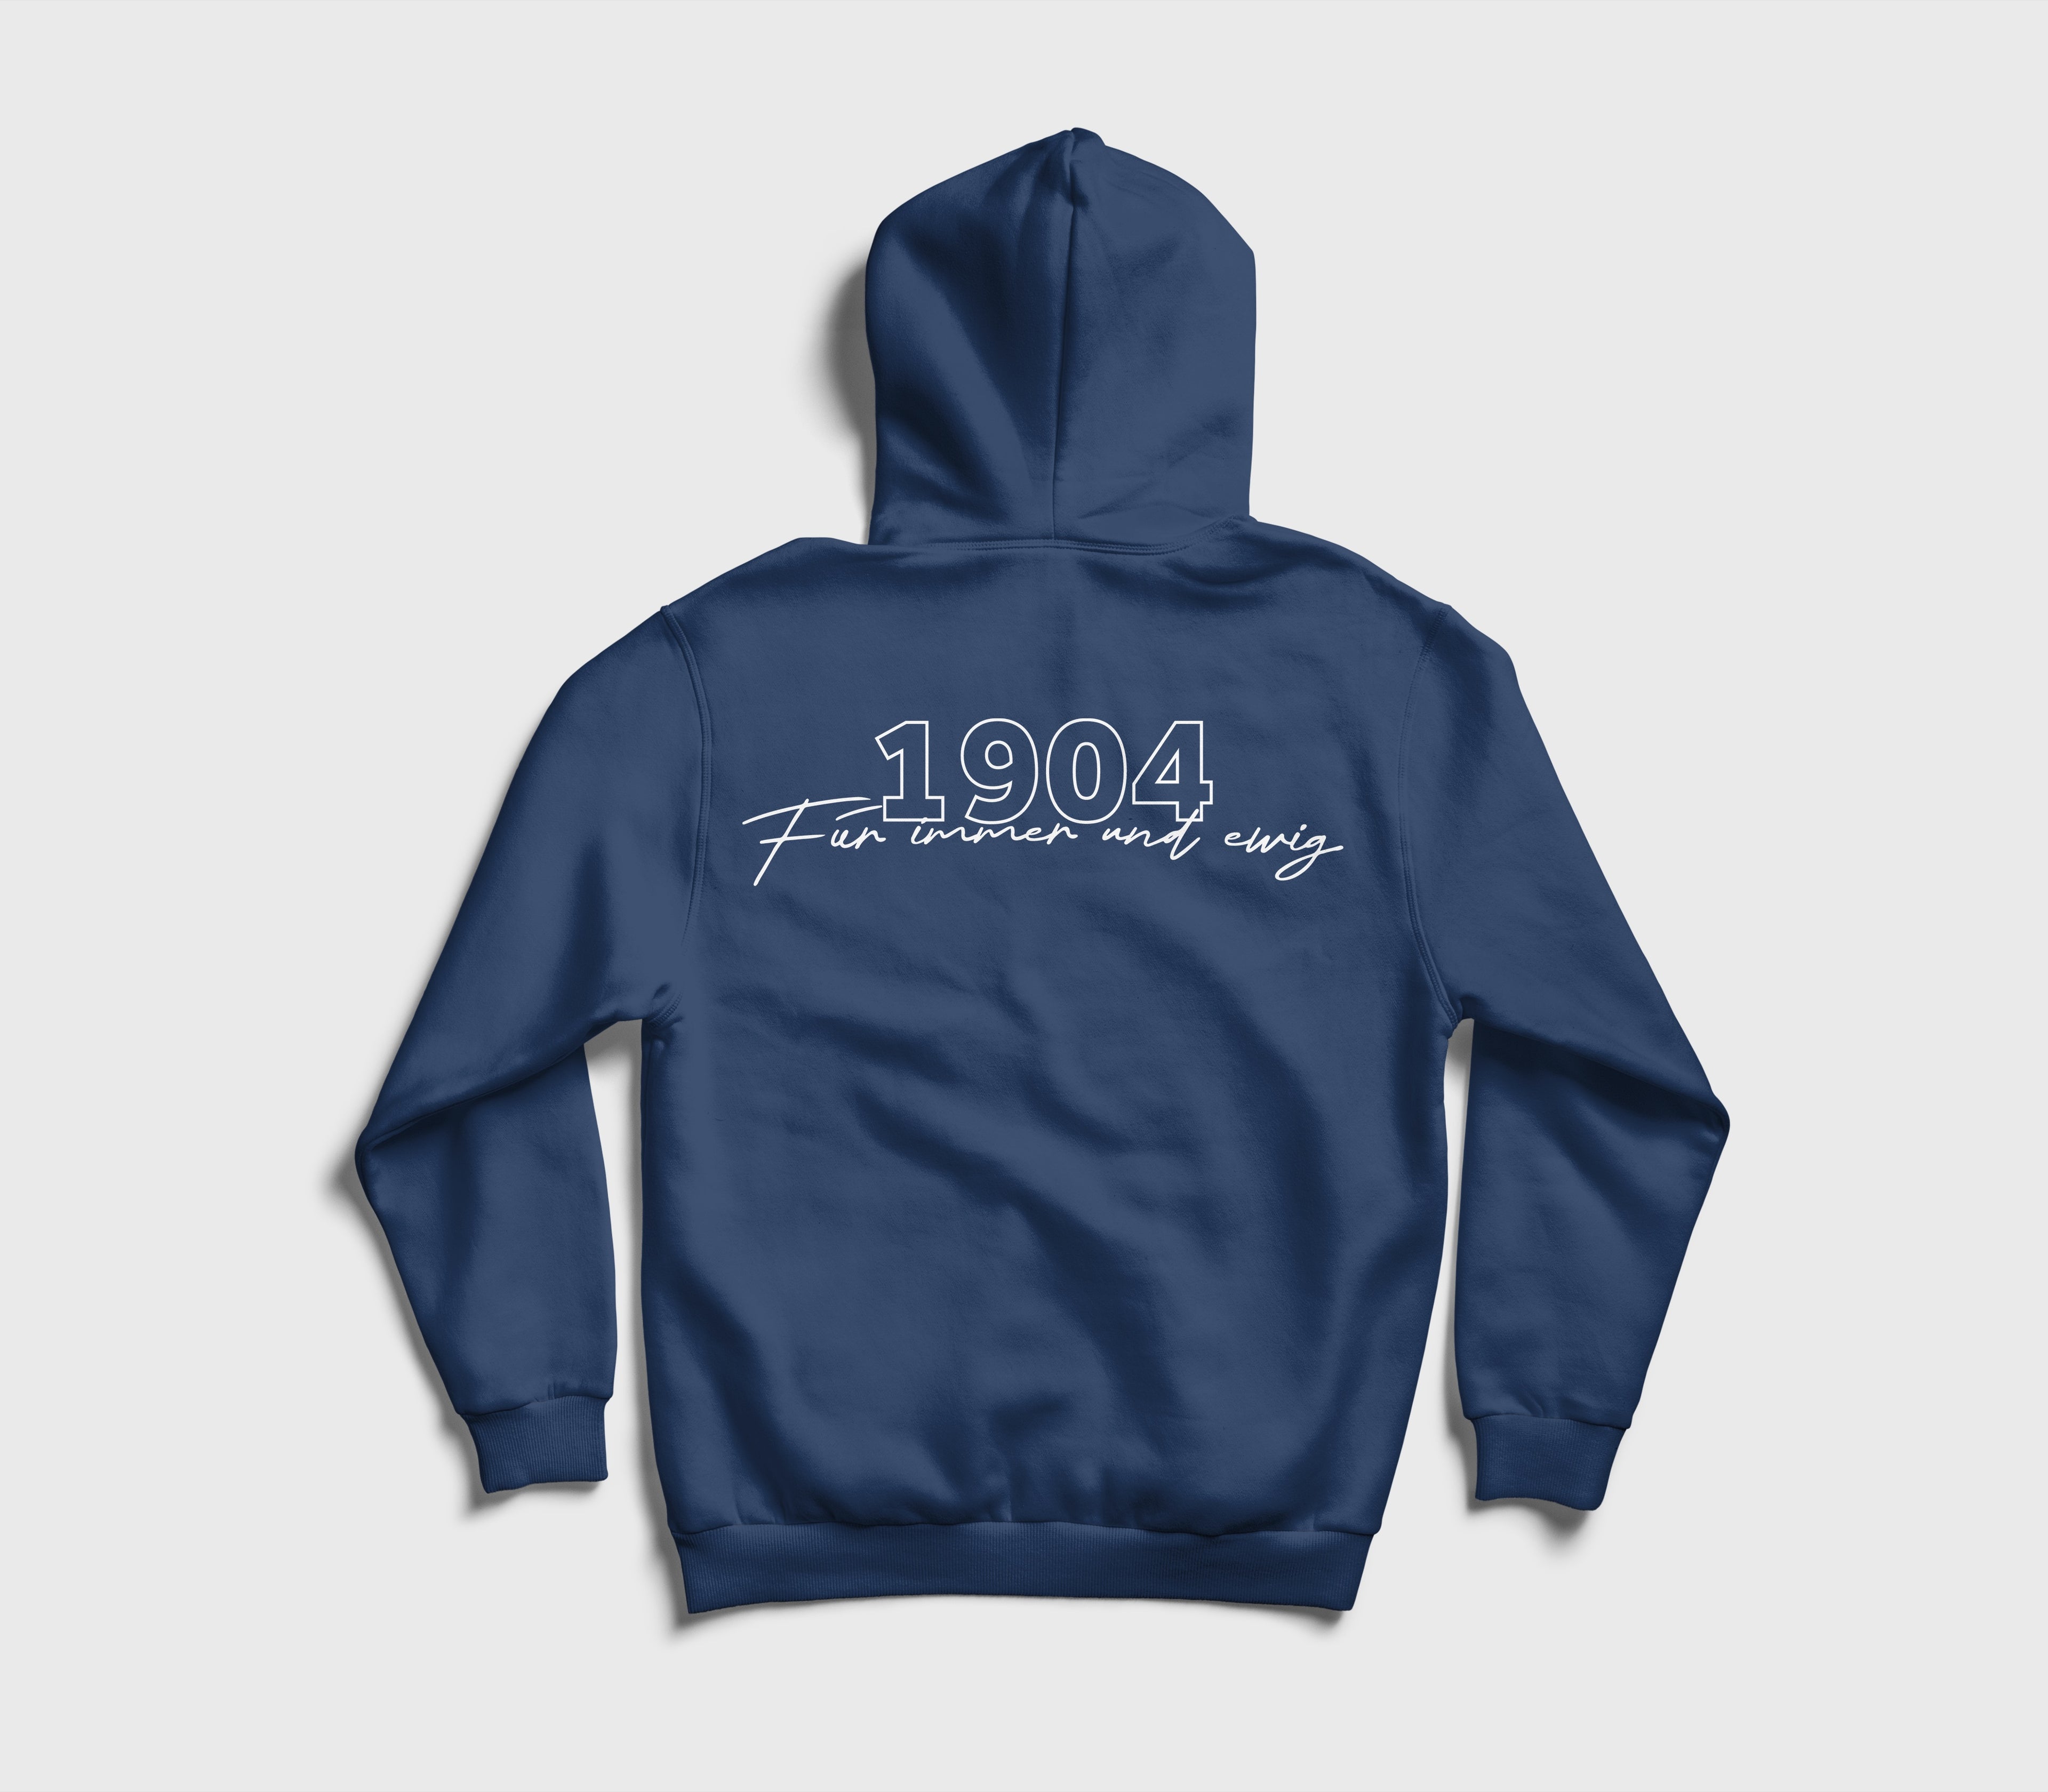 1904 - Für immer und ewig - Pullover / Sweatshirt